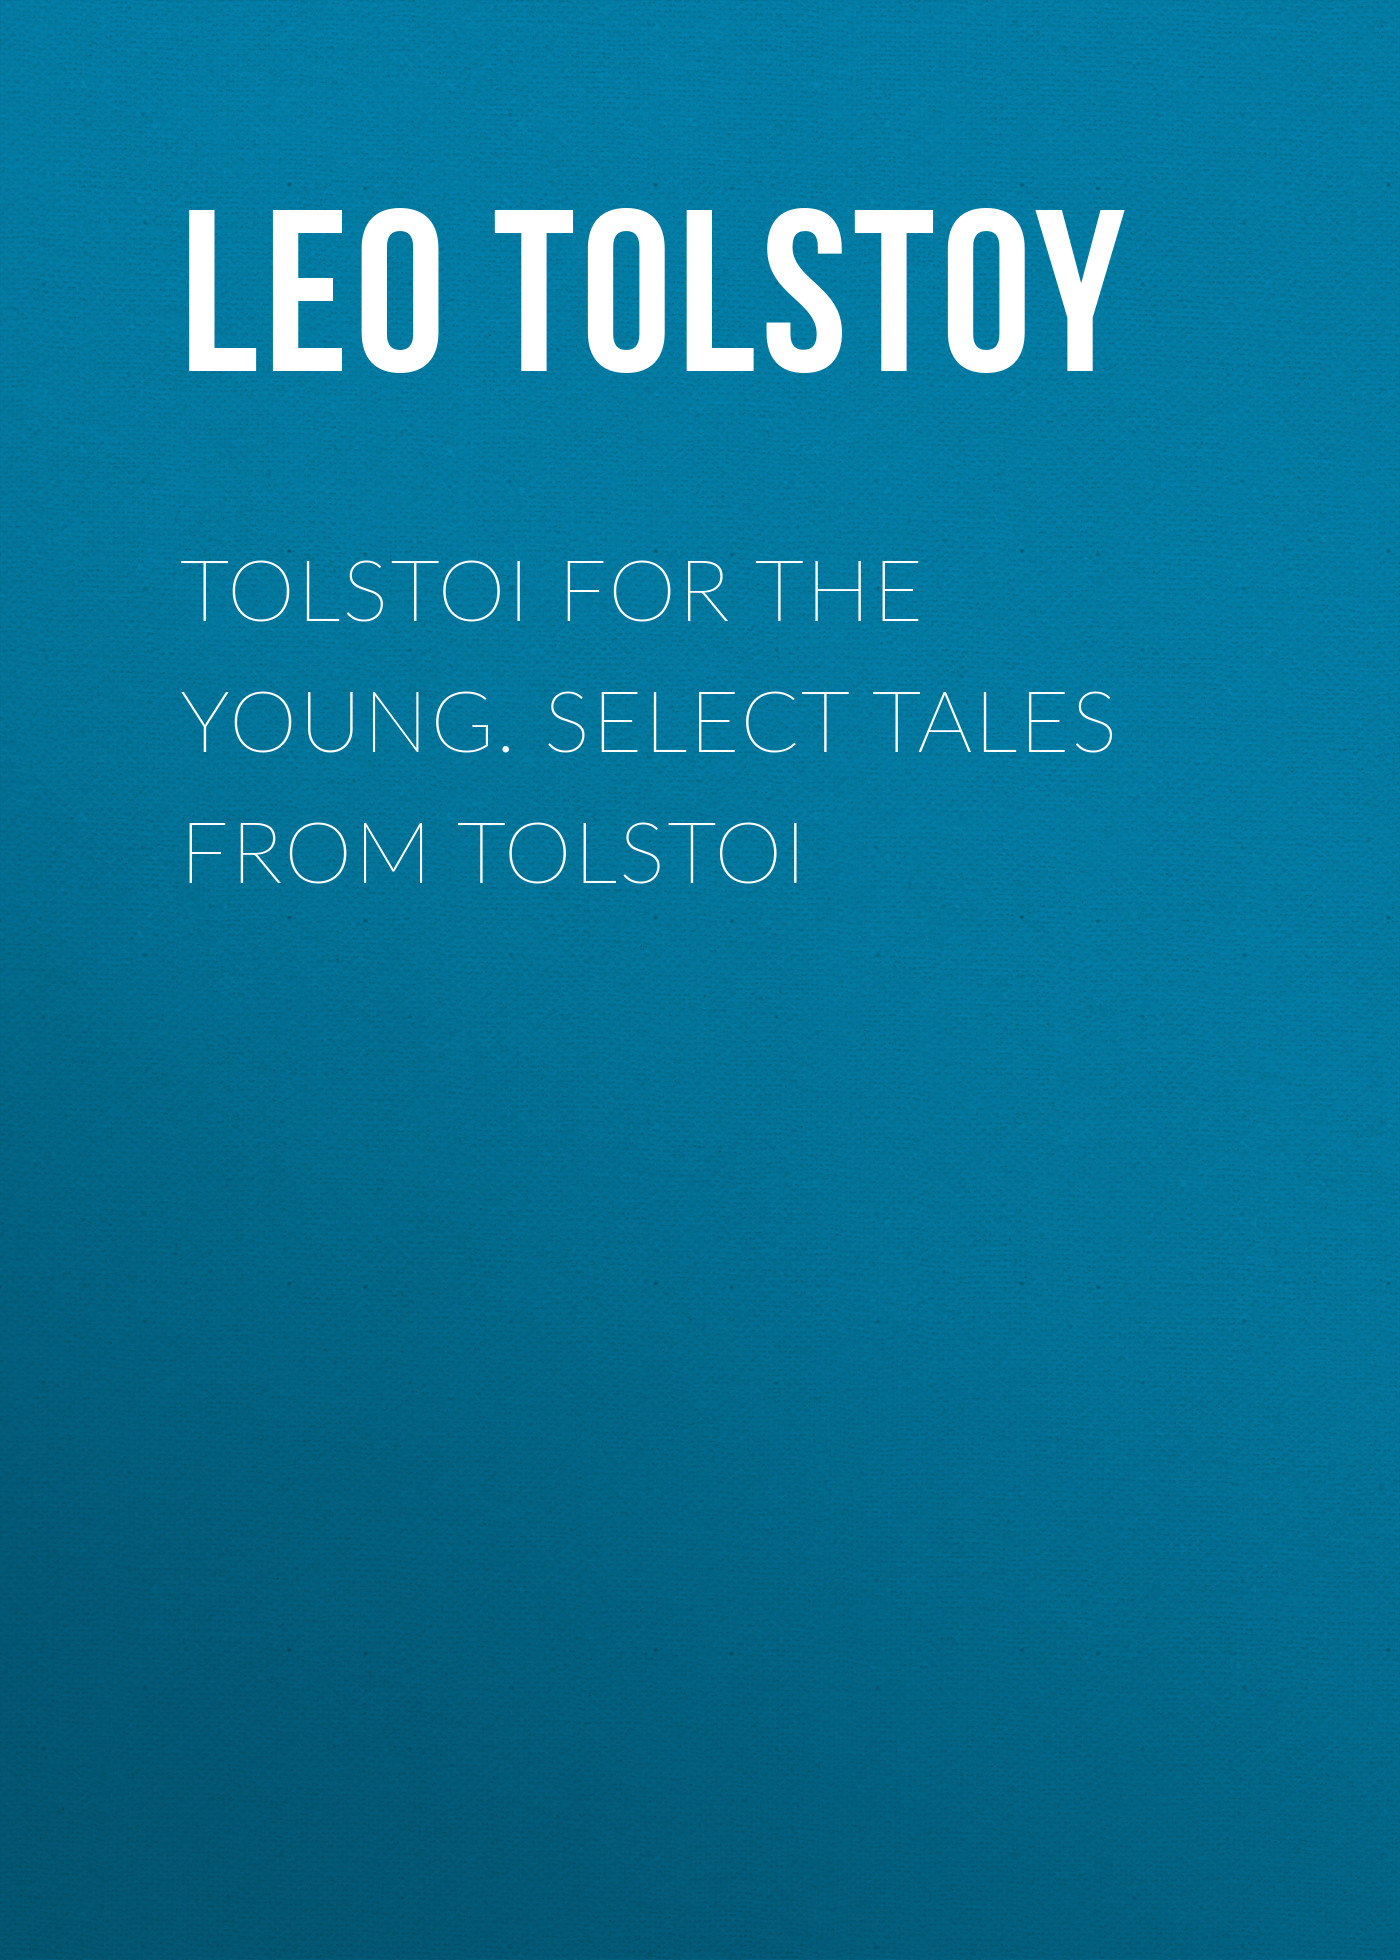 Книга Tolstoi for the young. Select tales from Tolstoi из серии , созданная Leo Tolstoy, может относится к жанру Литература 19 века, Русская классика, Иностранные языки. Стоимость электронной книги Tolstoi for the young. Select tales from Tolstoi с идентификатором 23154307 составляет 5.99 руб.